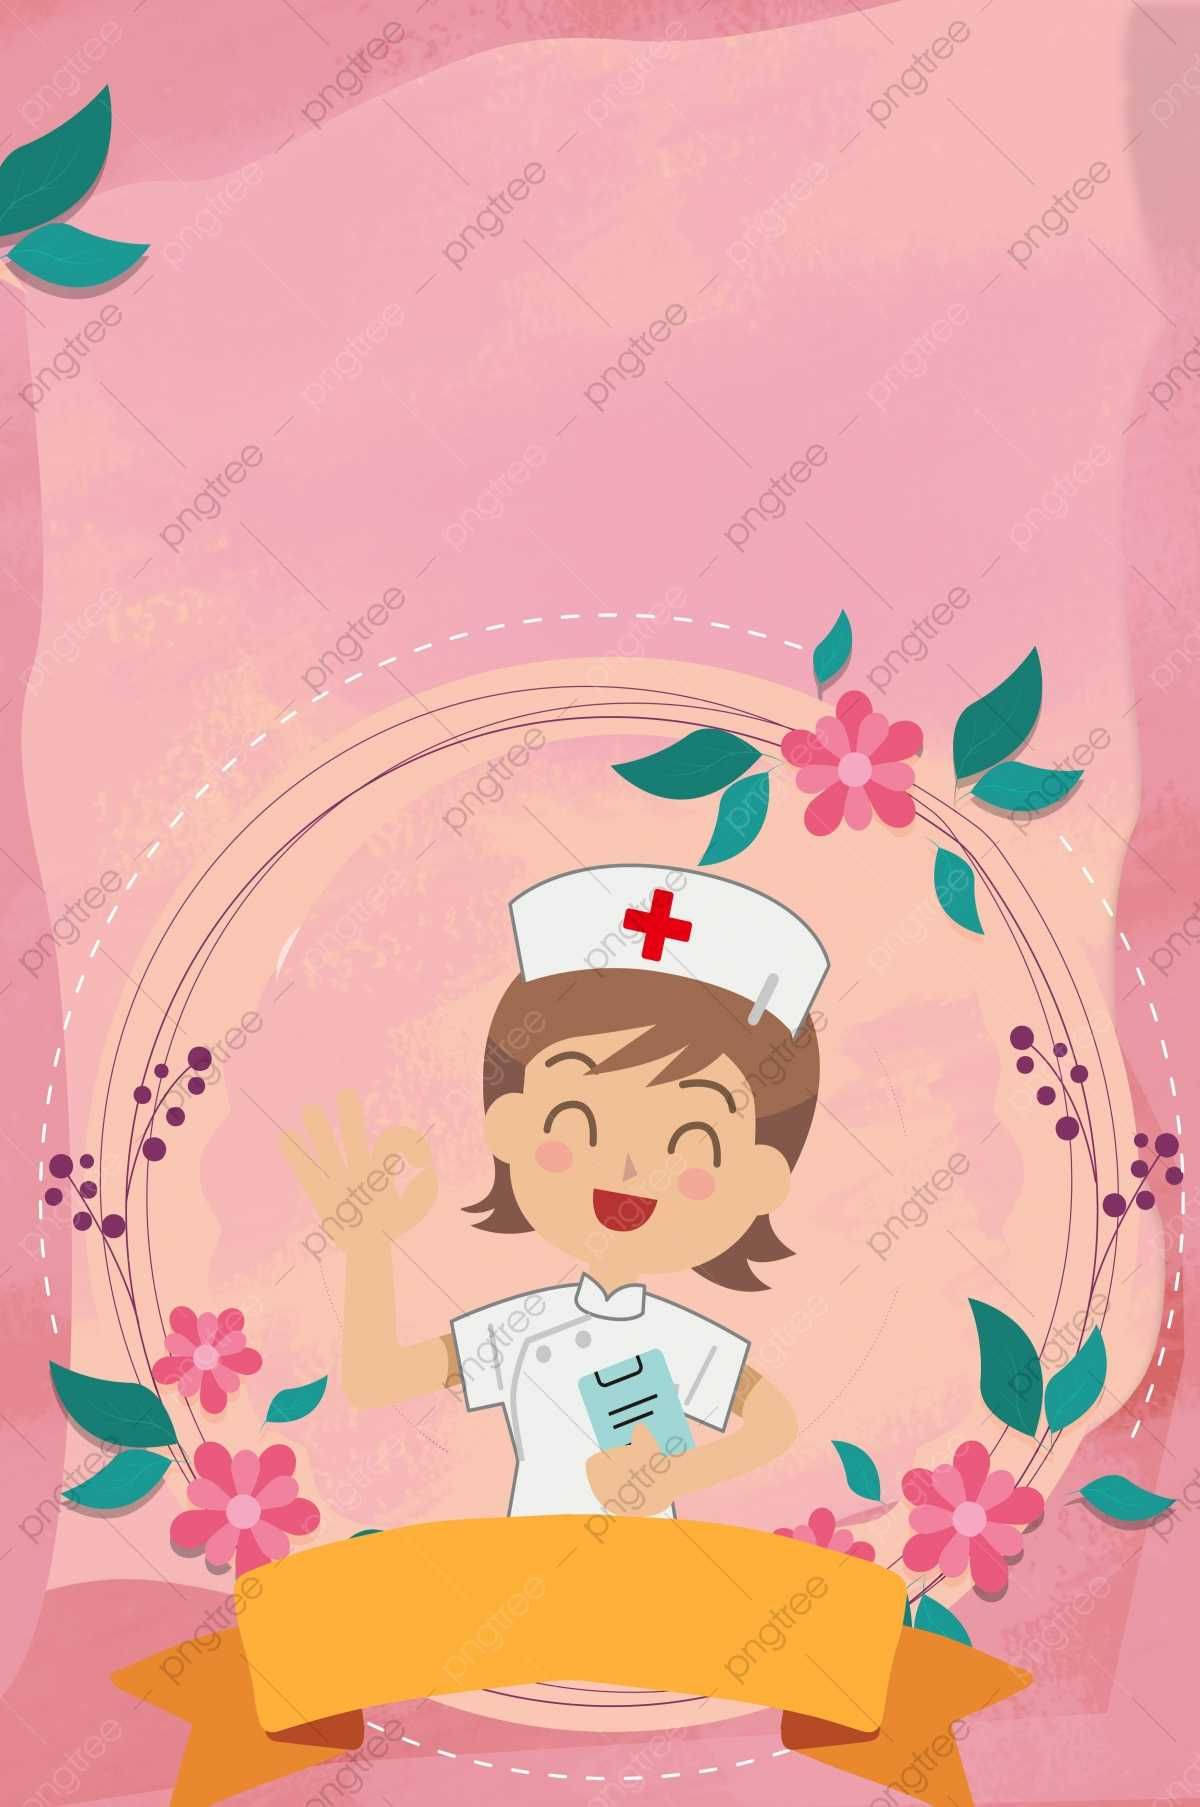 nurse cartoon wallpaper